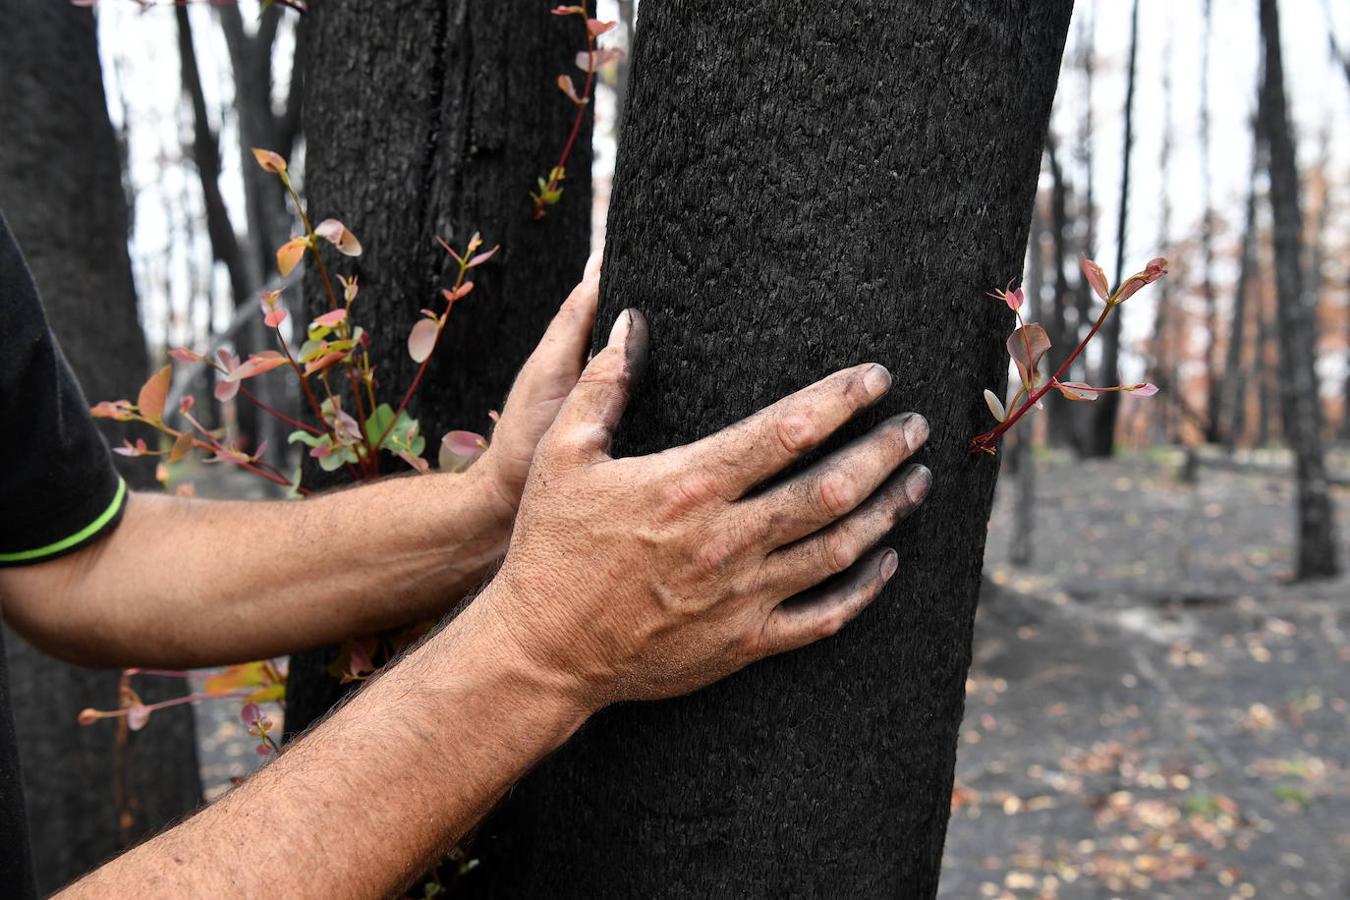 Así se abre la vida en los bosques de Australia tras los incendios